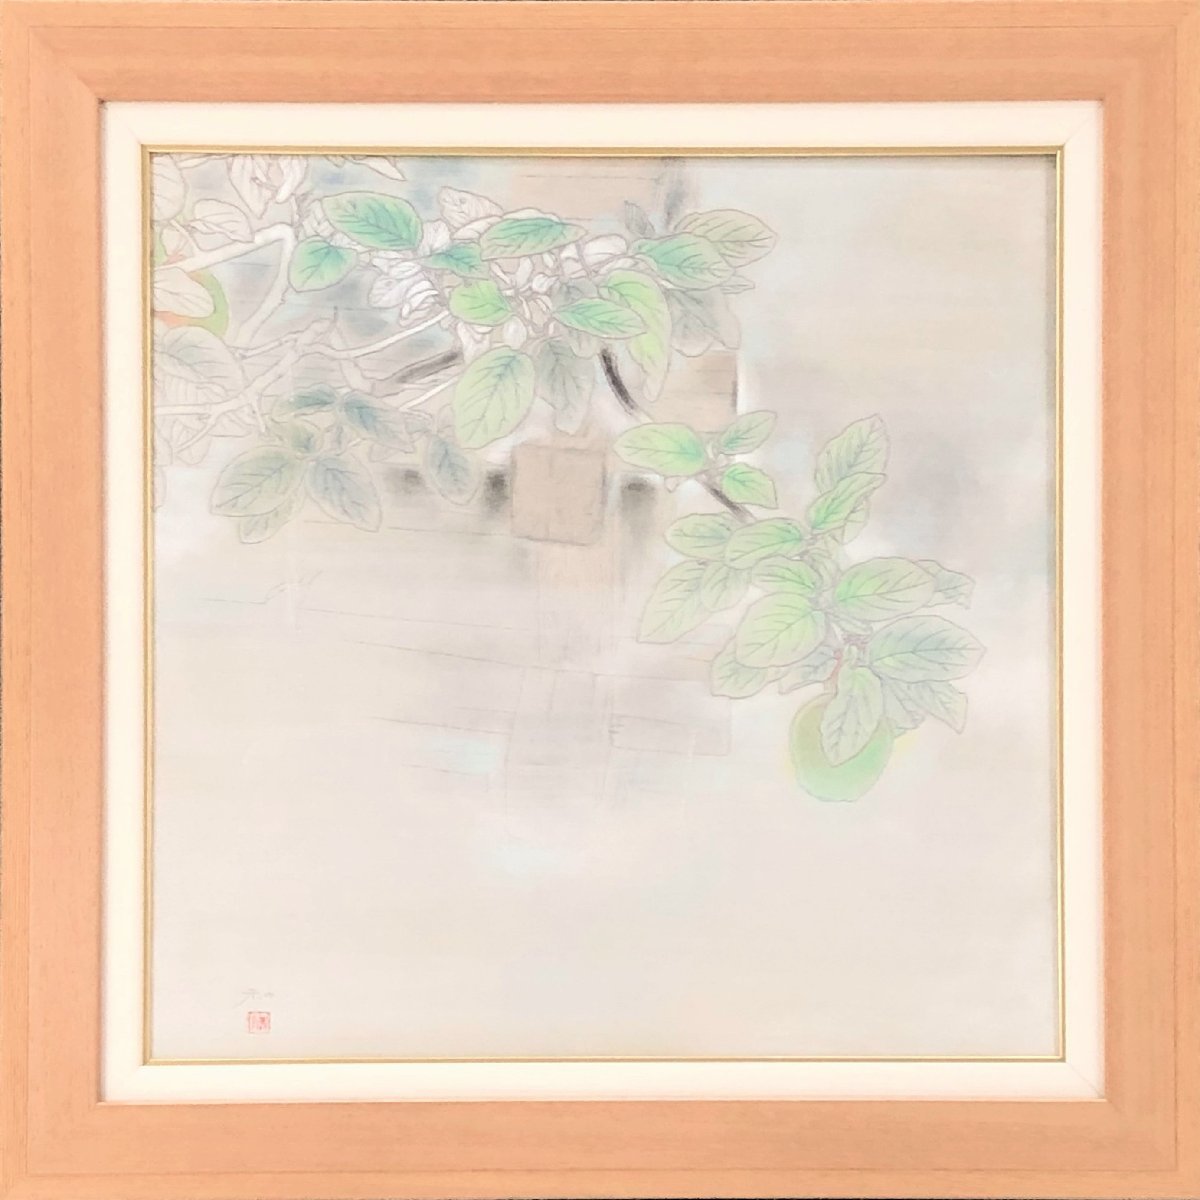 正宗齐藤和药果 10S 日本画 触摸美丽的东西就会产生光彩...... [Masamitsu Gallery] 成立 53 年前, 东京最大的美术馆之一 G*, 绘画, 日本画, 其他的